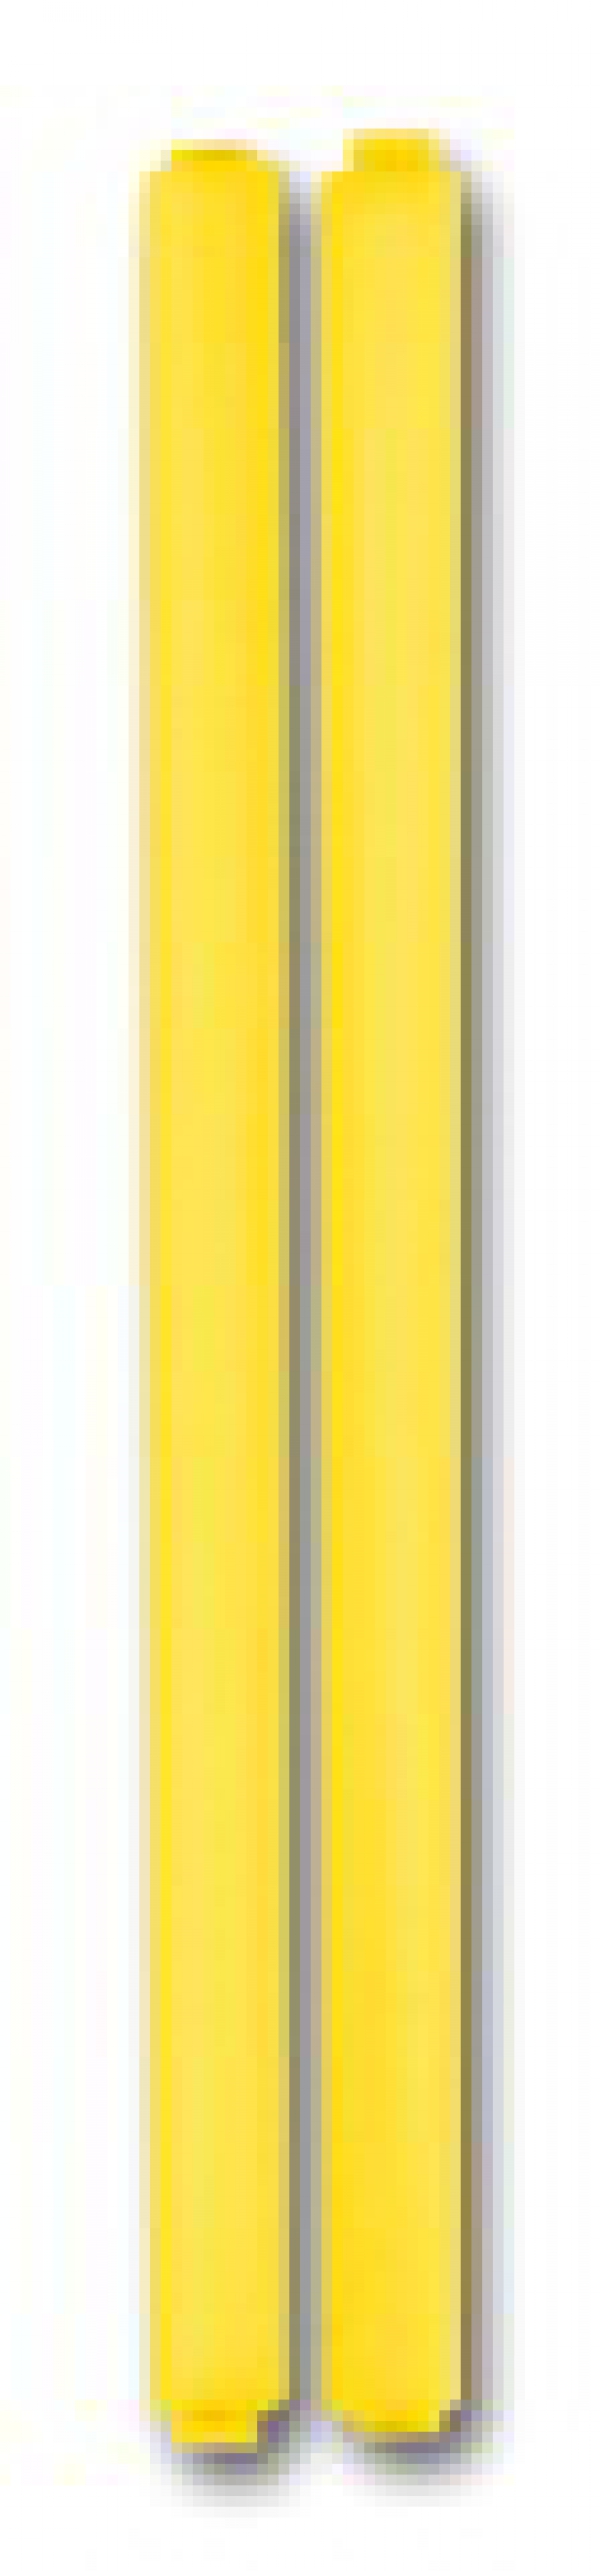 Декоративные вставки (2шт. в комплекте) Желтый (34901,62)